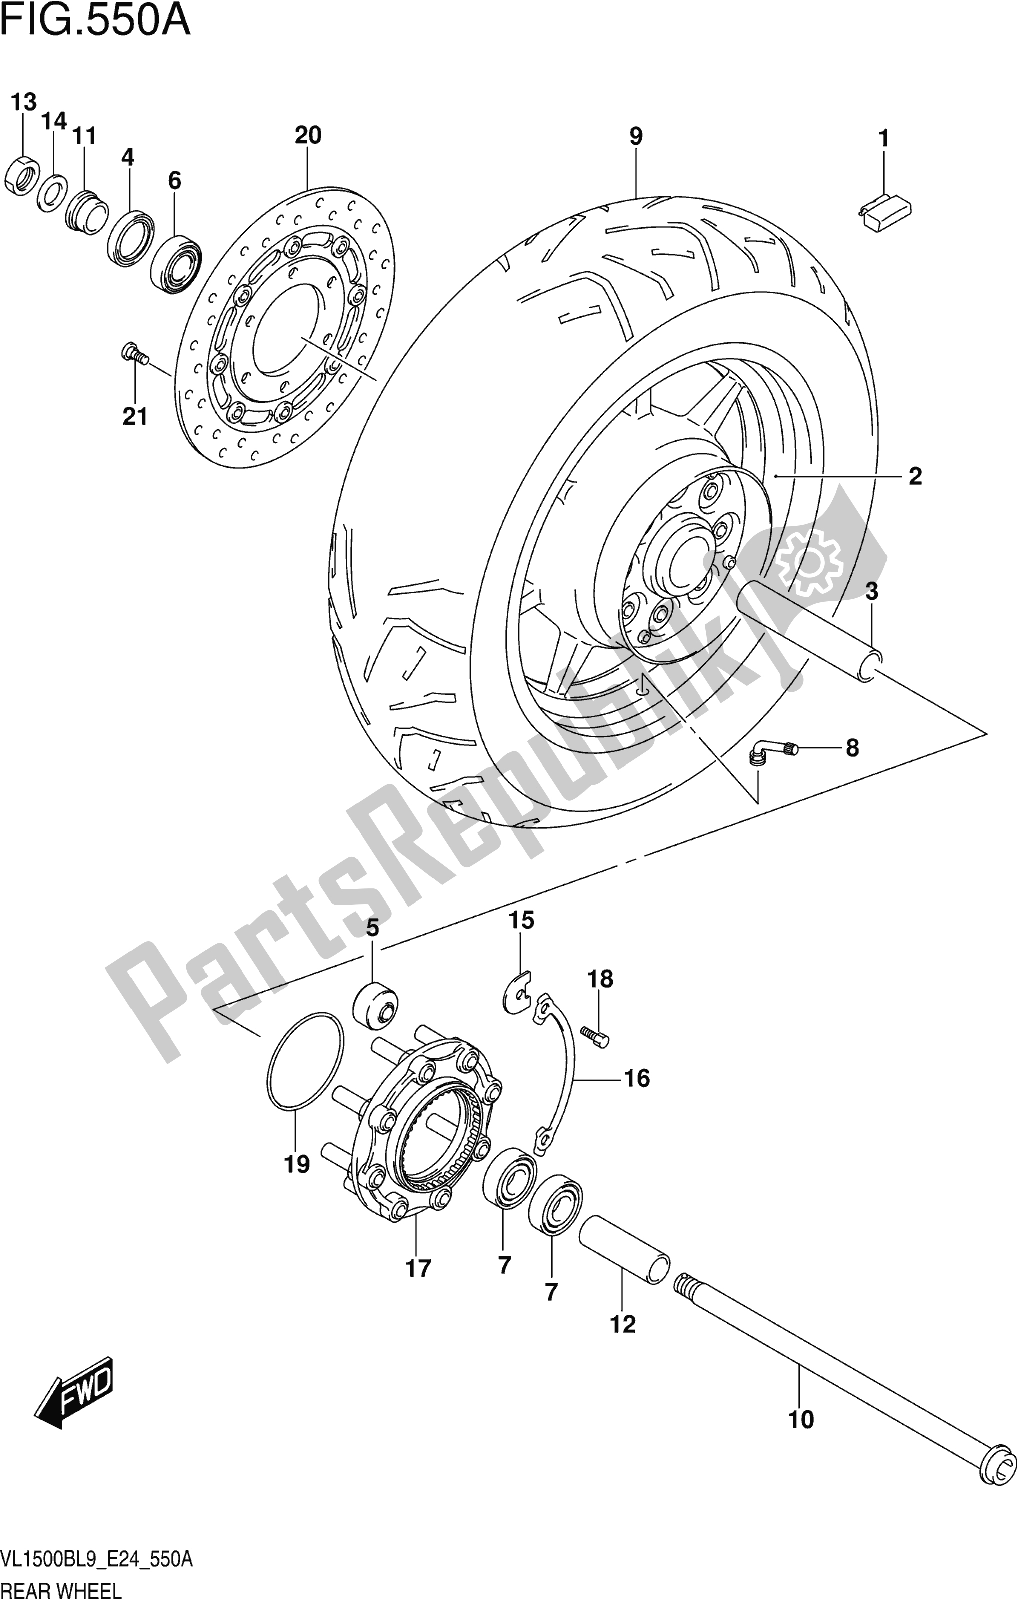 Alle onderdelen voor de Fig. 550a Rear Wheel van de Suzuki VL 1500B 2019